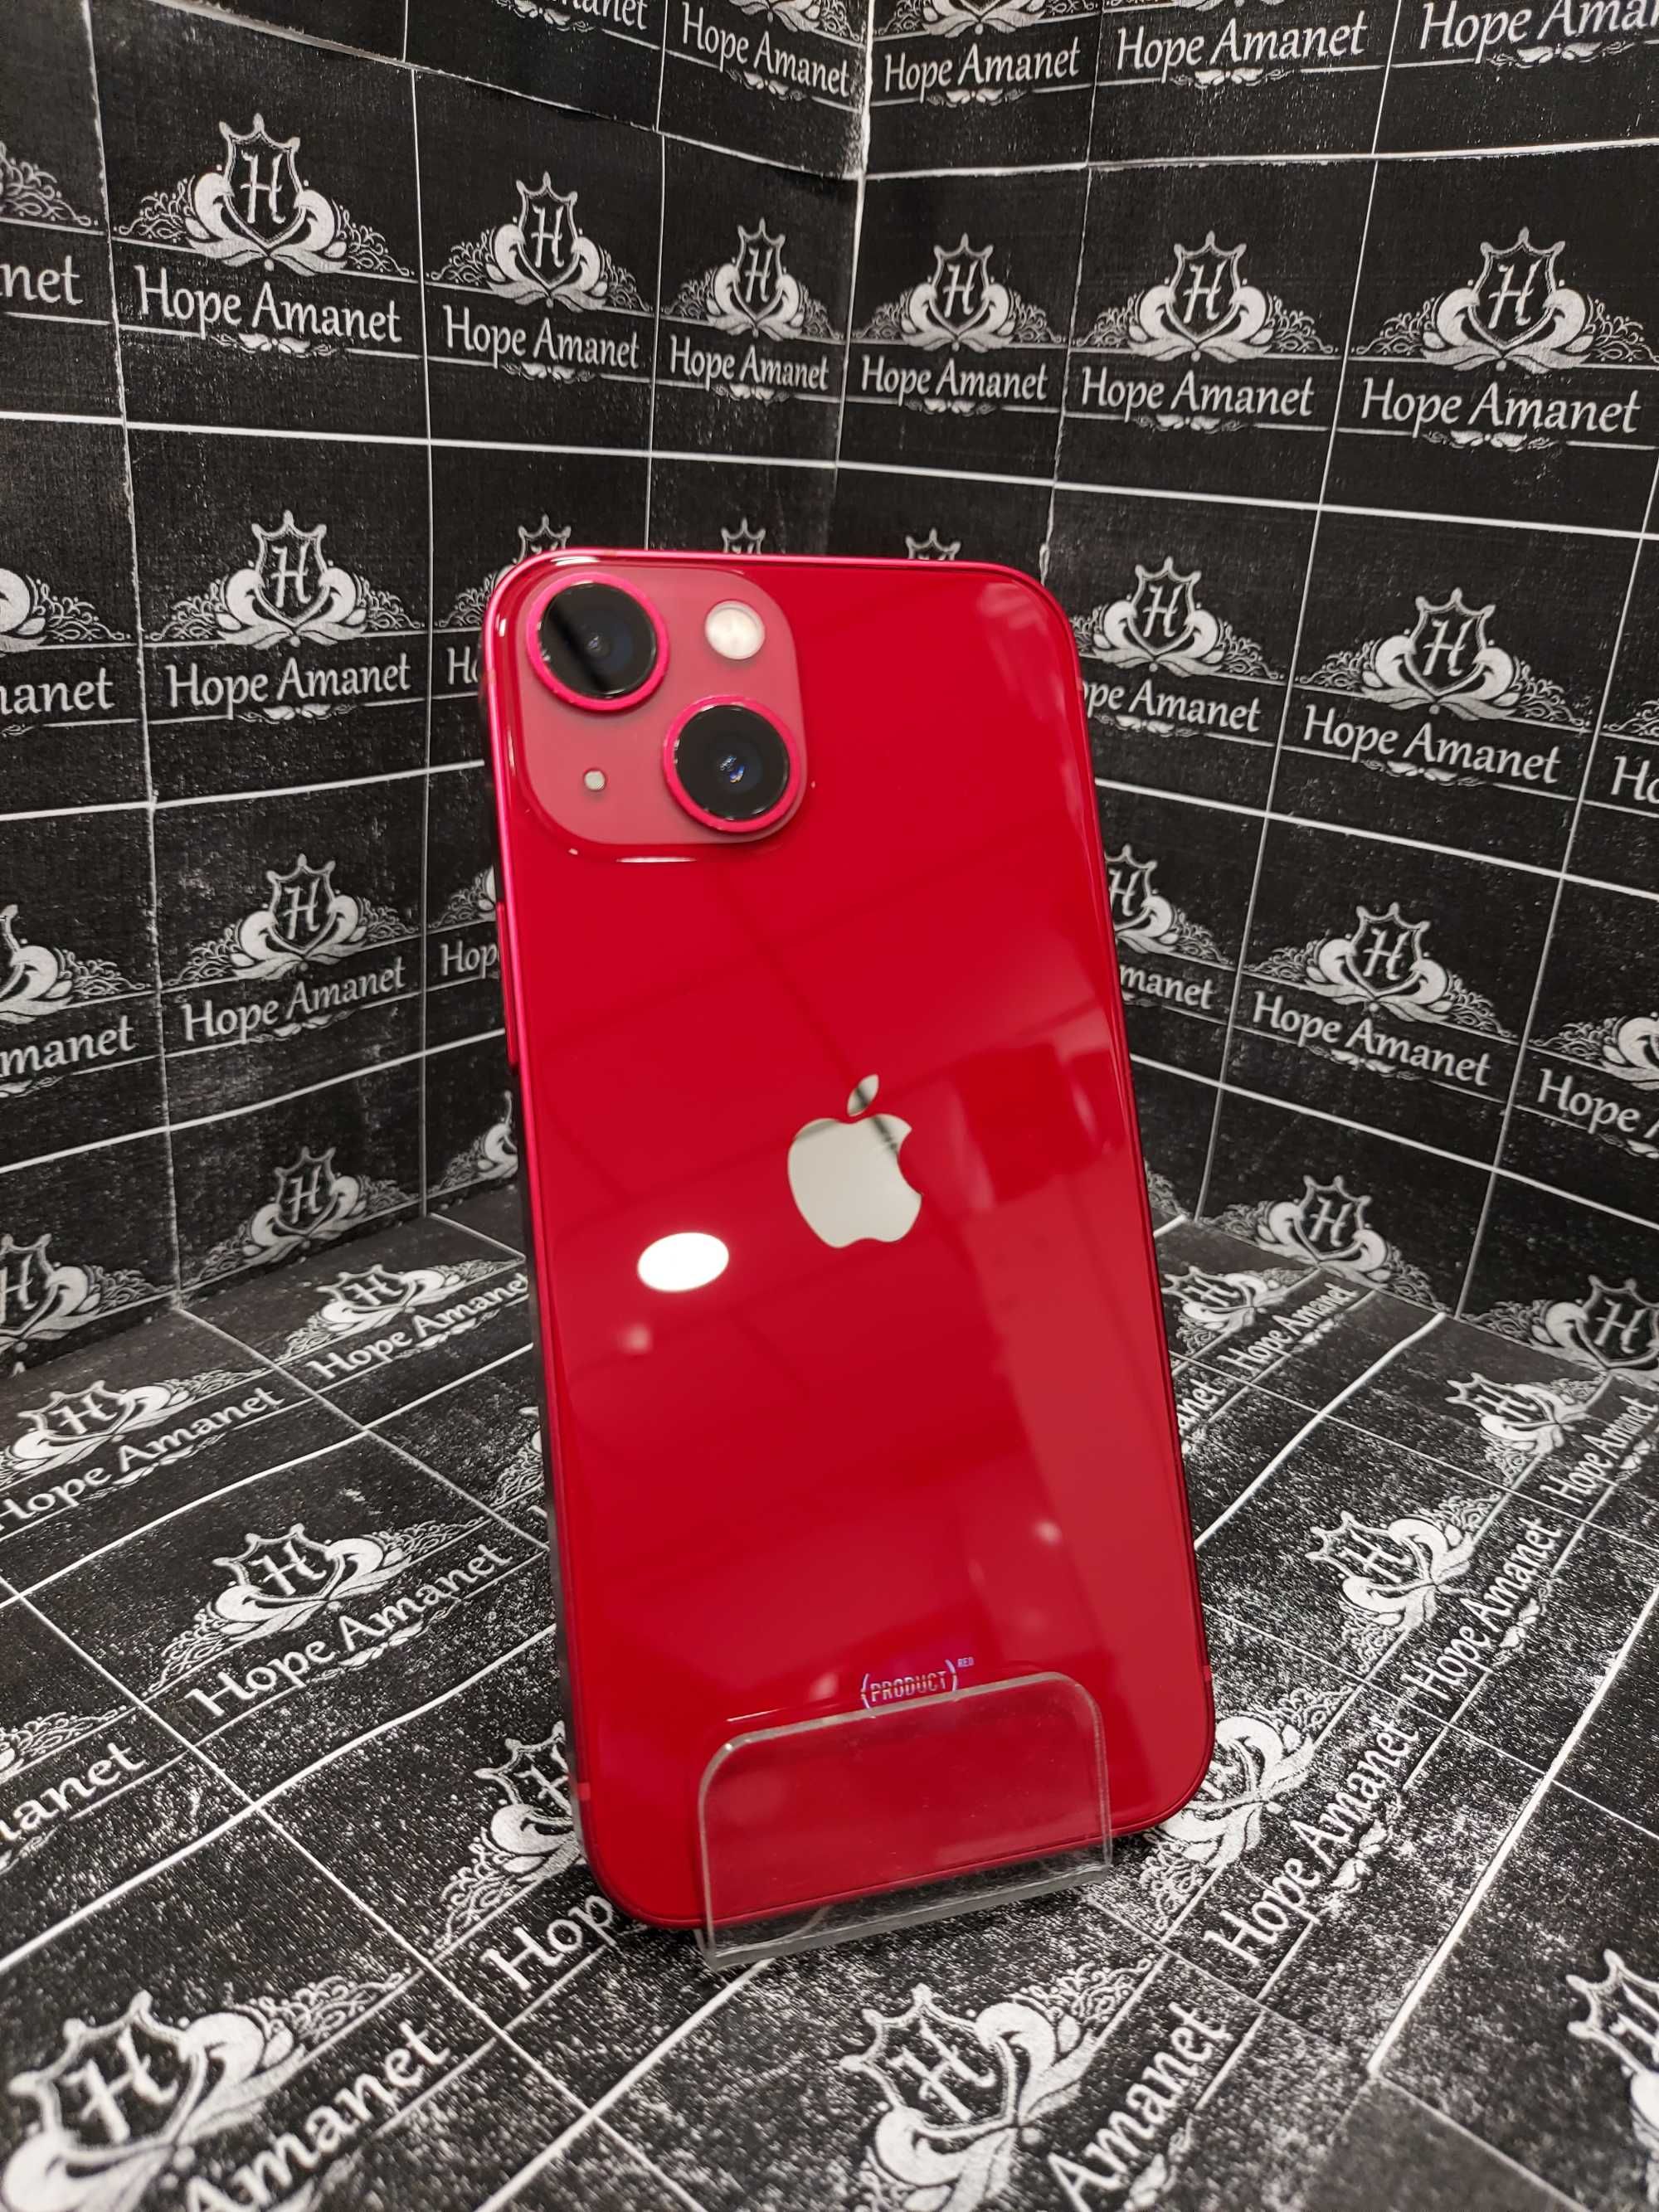 Hope Amanet P5 -iPhone 13 Mini Red, 128GB/84% , 12 LUNI GARANTIE !